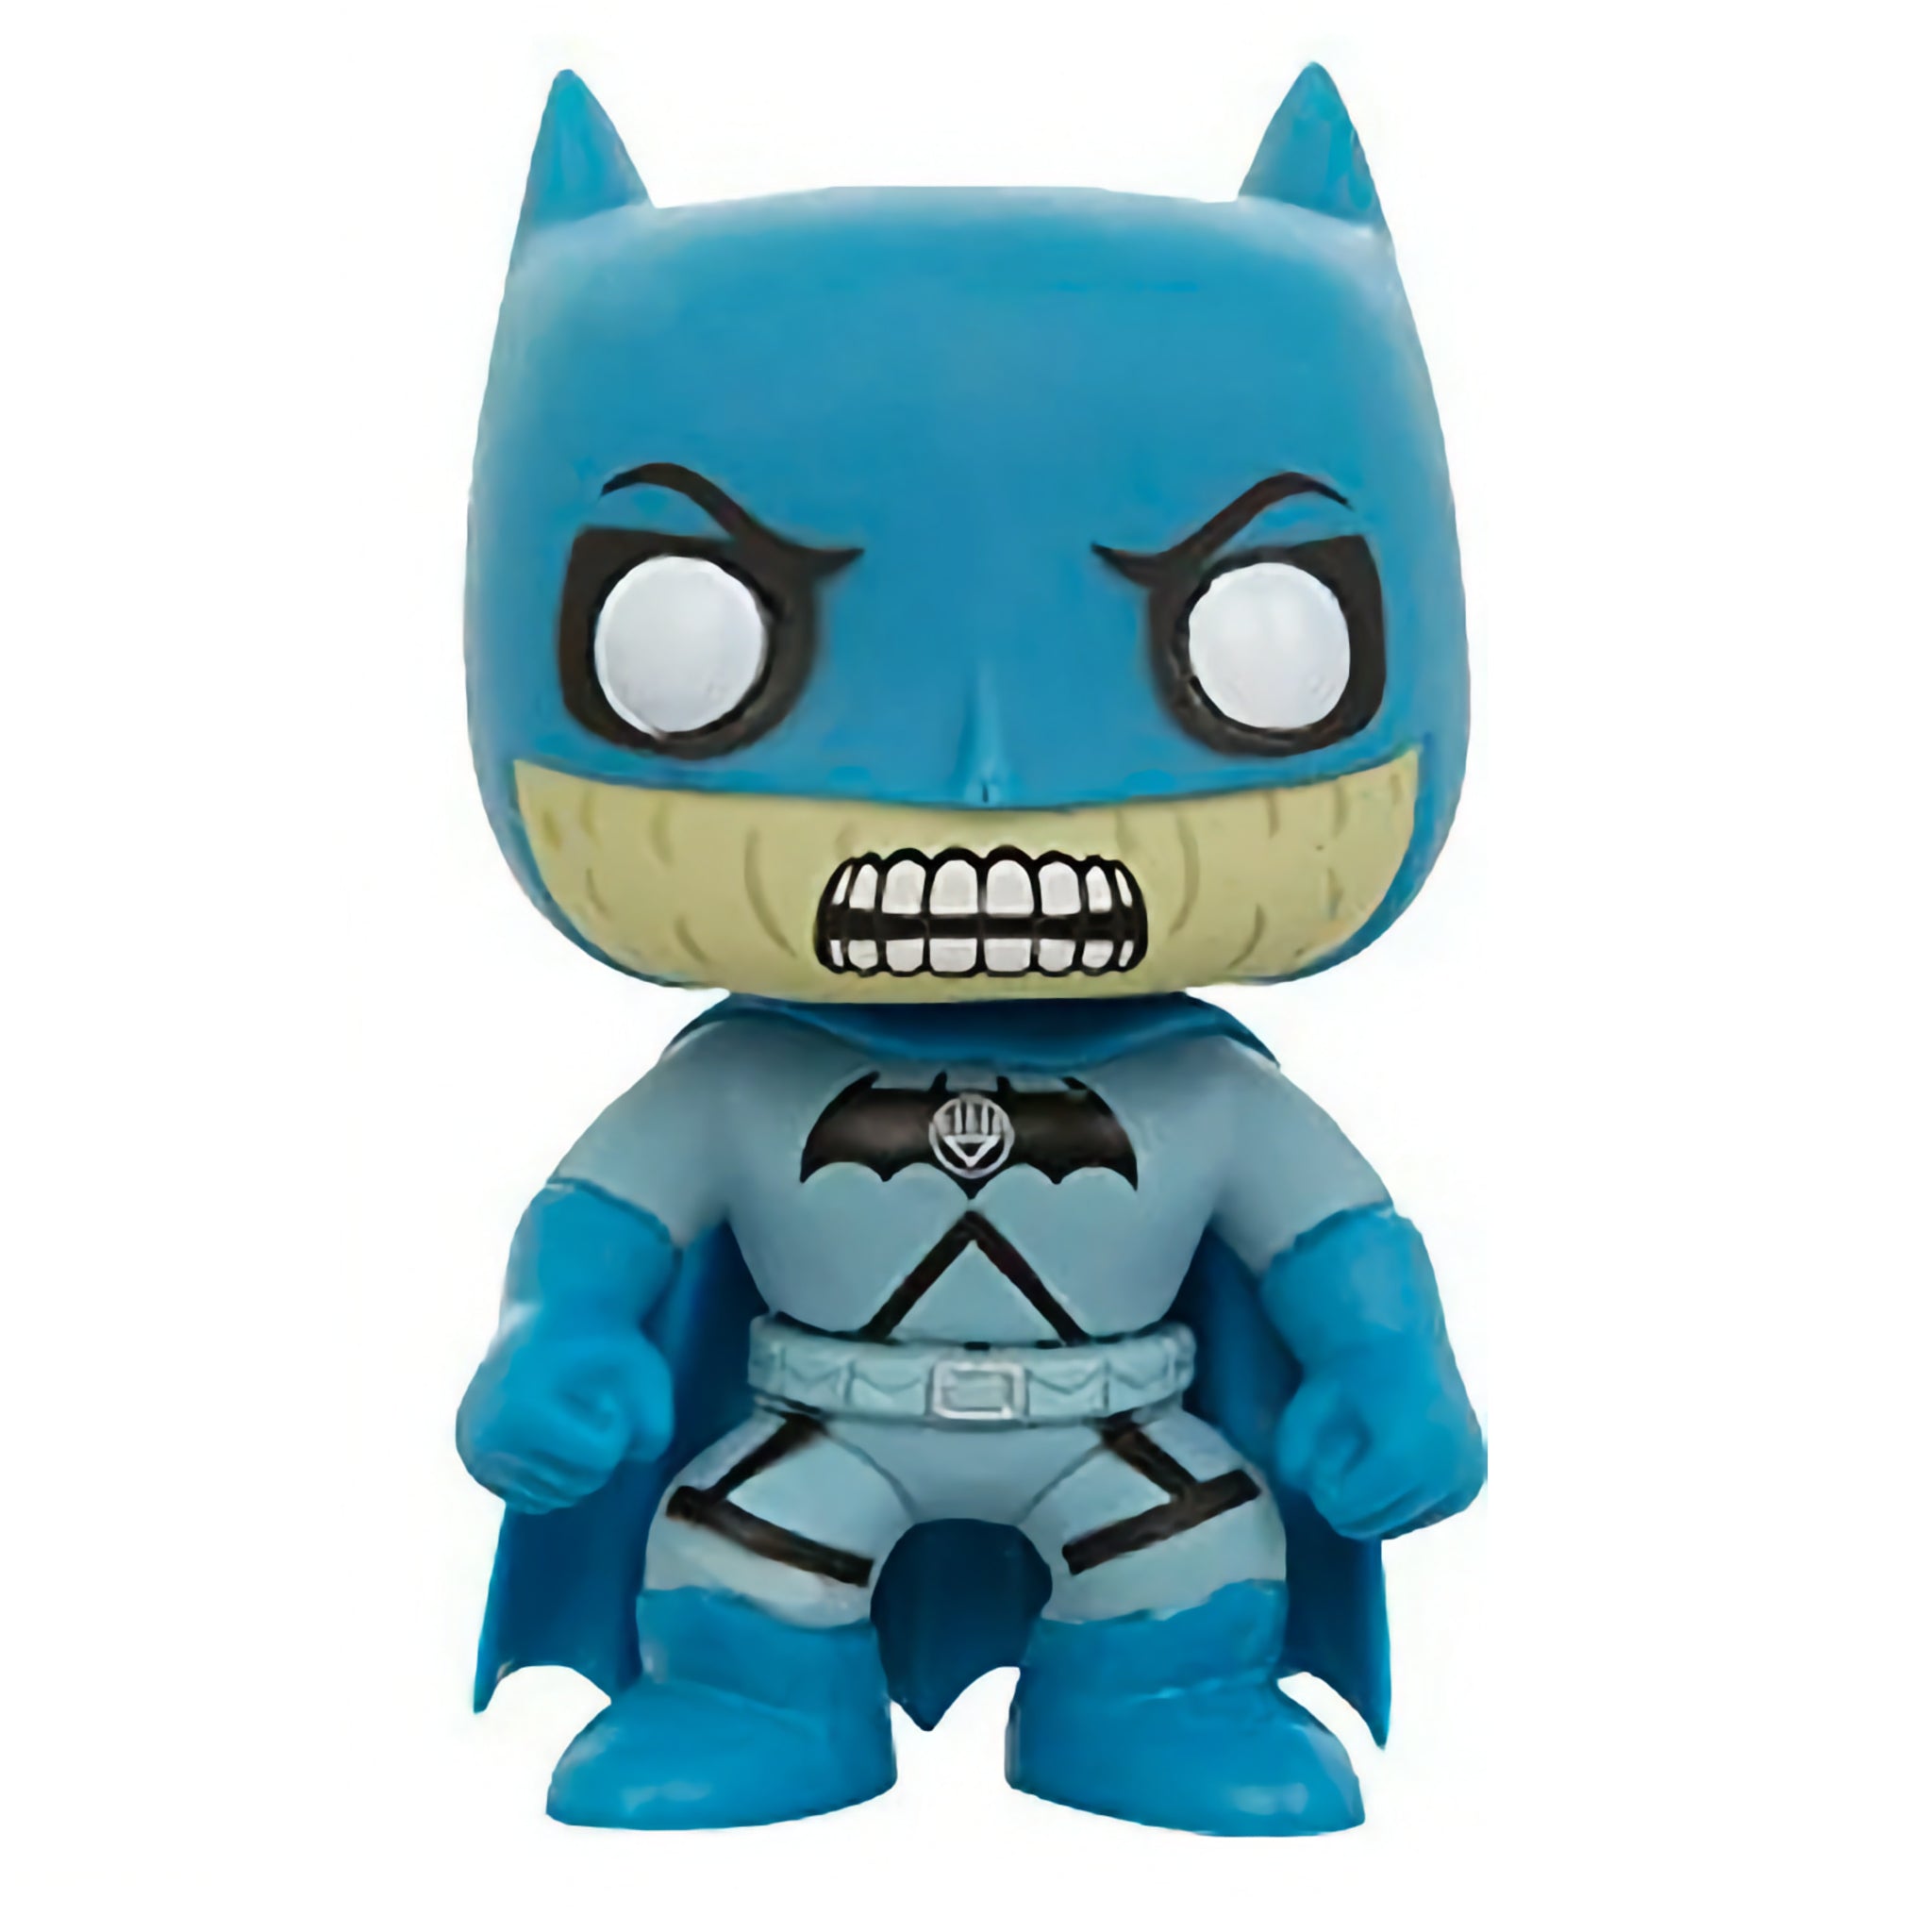 Blackest Night Batman Funko Pop!